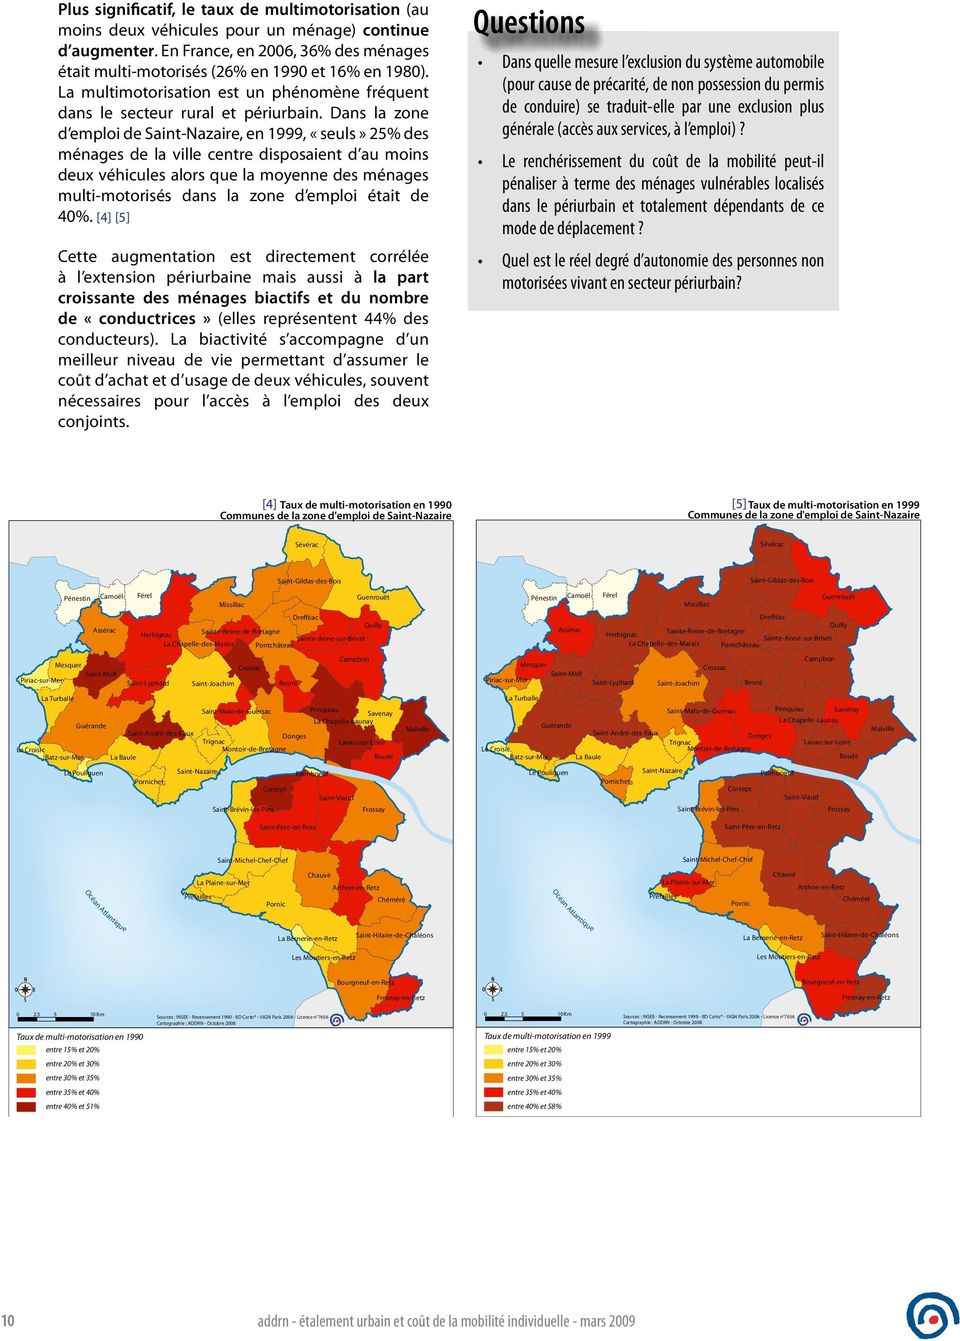 Dans la zone d emploi de Saint-Nazaire, en 1999, «seuls» 25% des ménages de la ville centre disposaient d au moins deux véhicules alors que la moyenne des ménages multi-motorisés dans la zone d